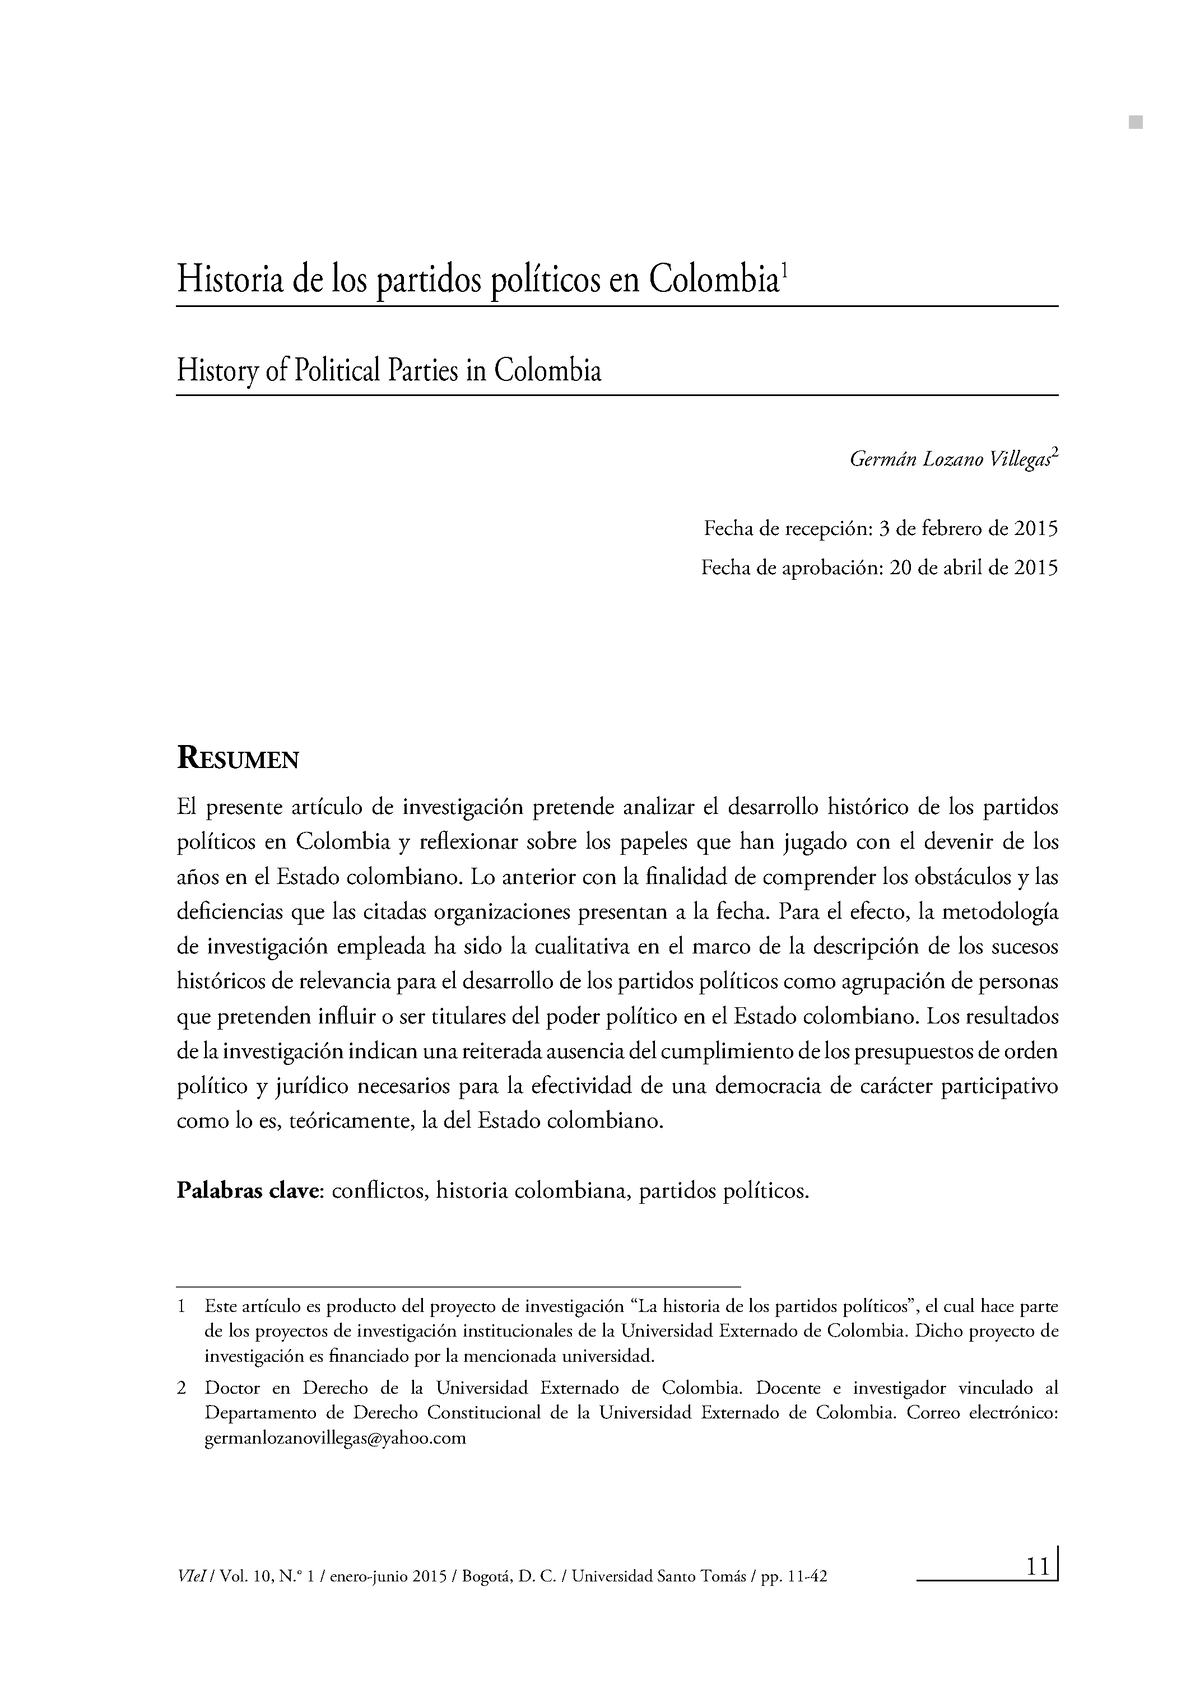 Historia De Los Partidos Politicos De Colombia Historia De Los Partidos Políticos En Colombia 9950